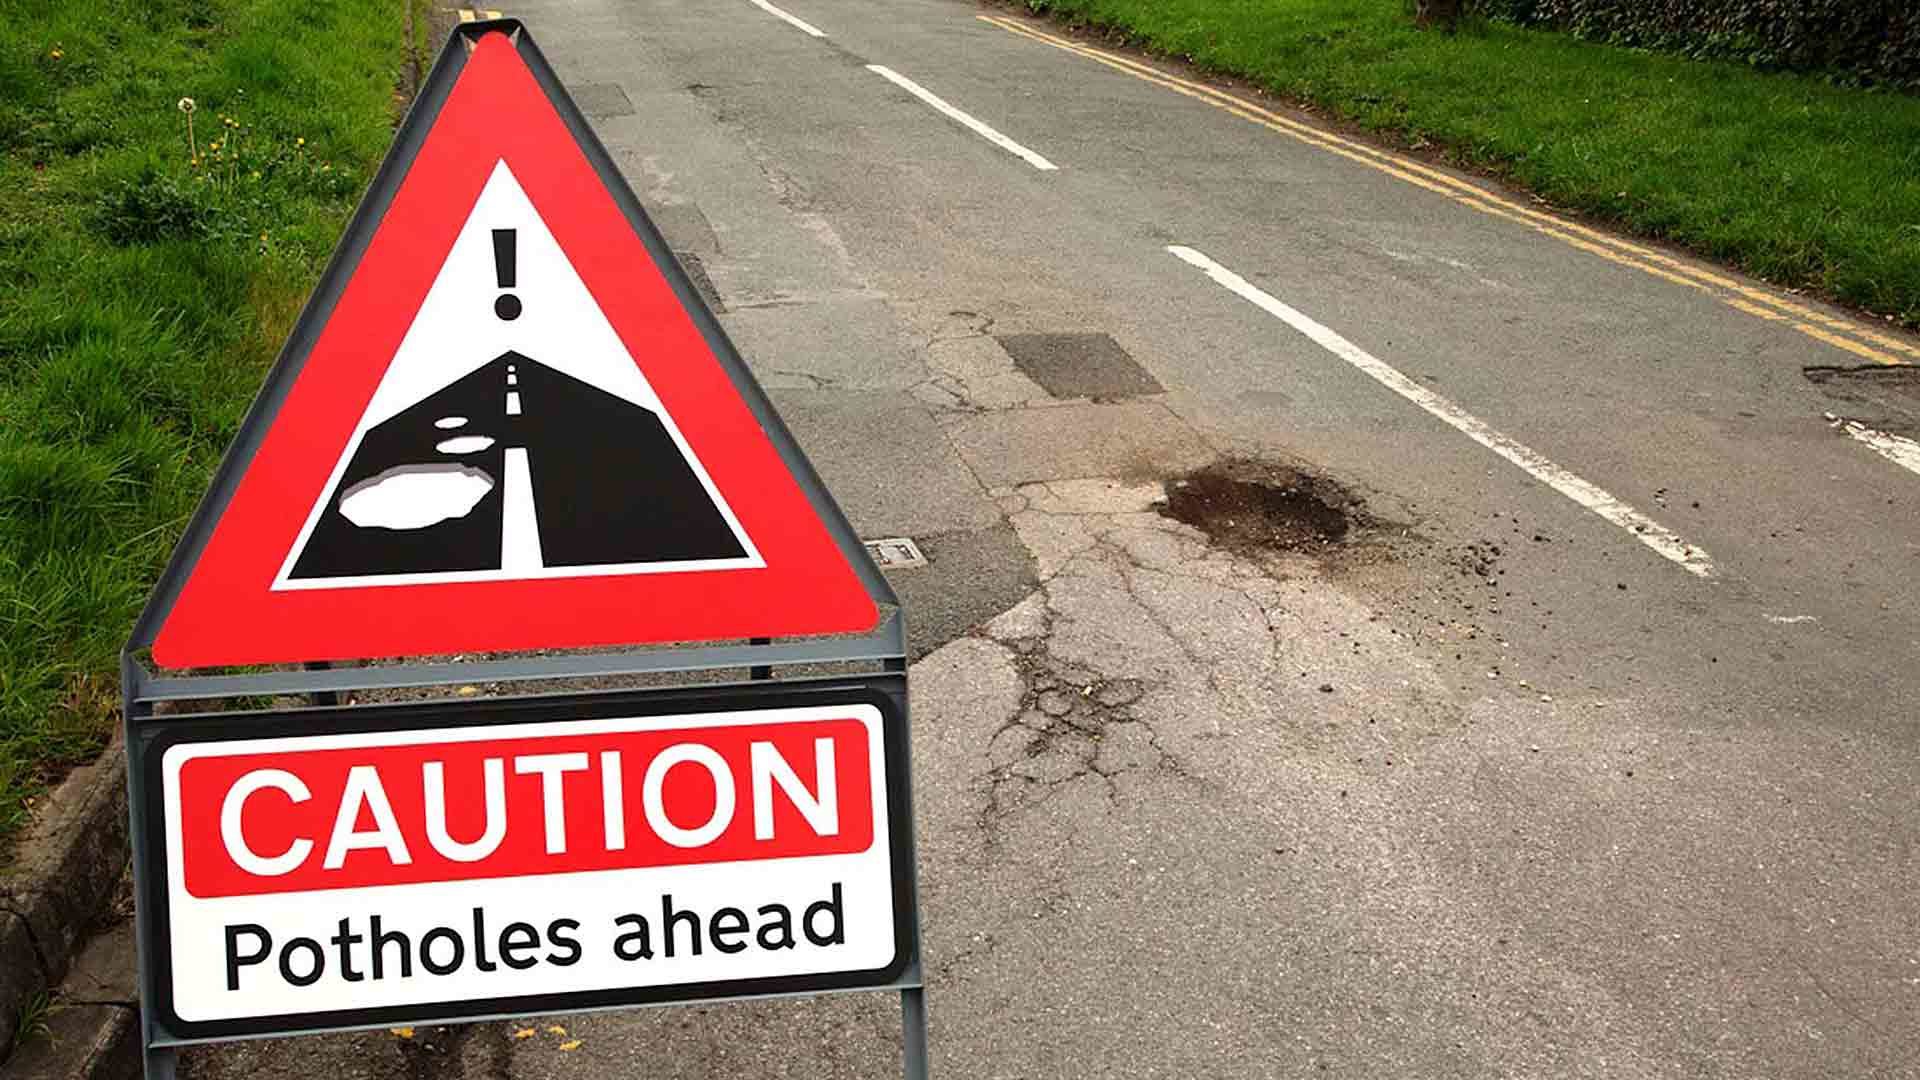 Potholes warning sign